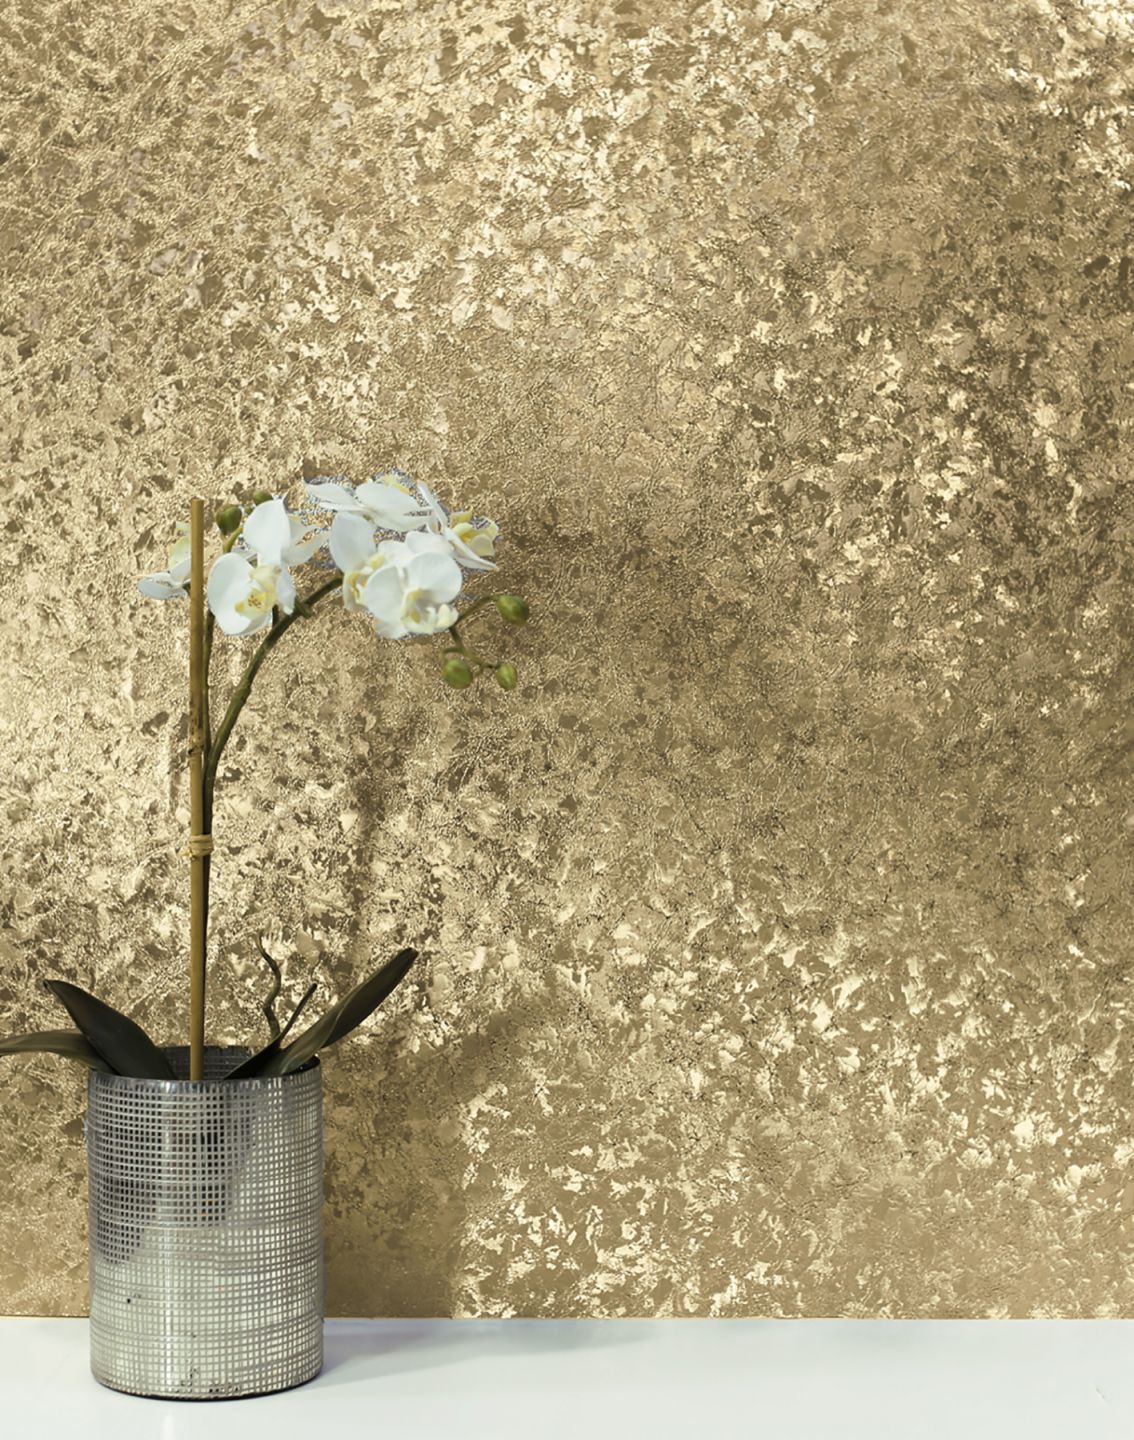 Eine gold glänzende Metalltapete an der Wand hinter einer Vase mit weißer Orchidee